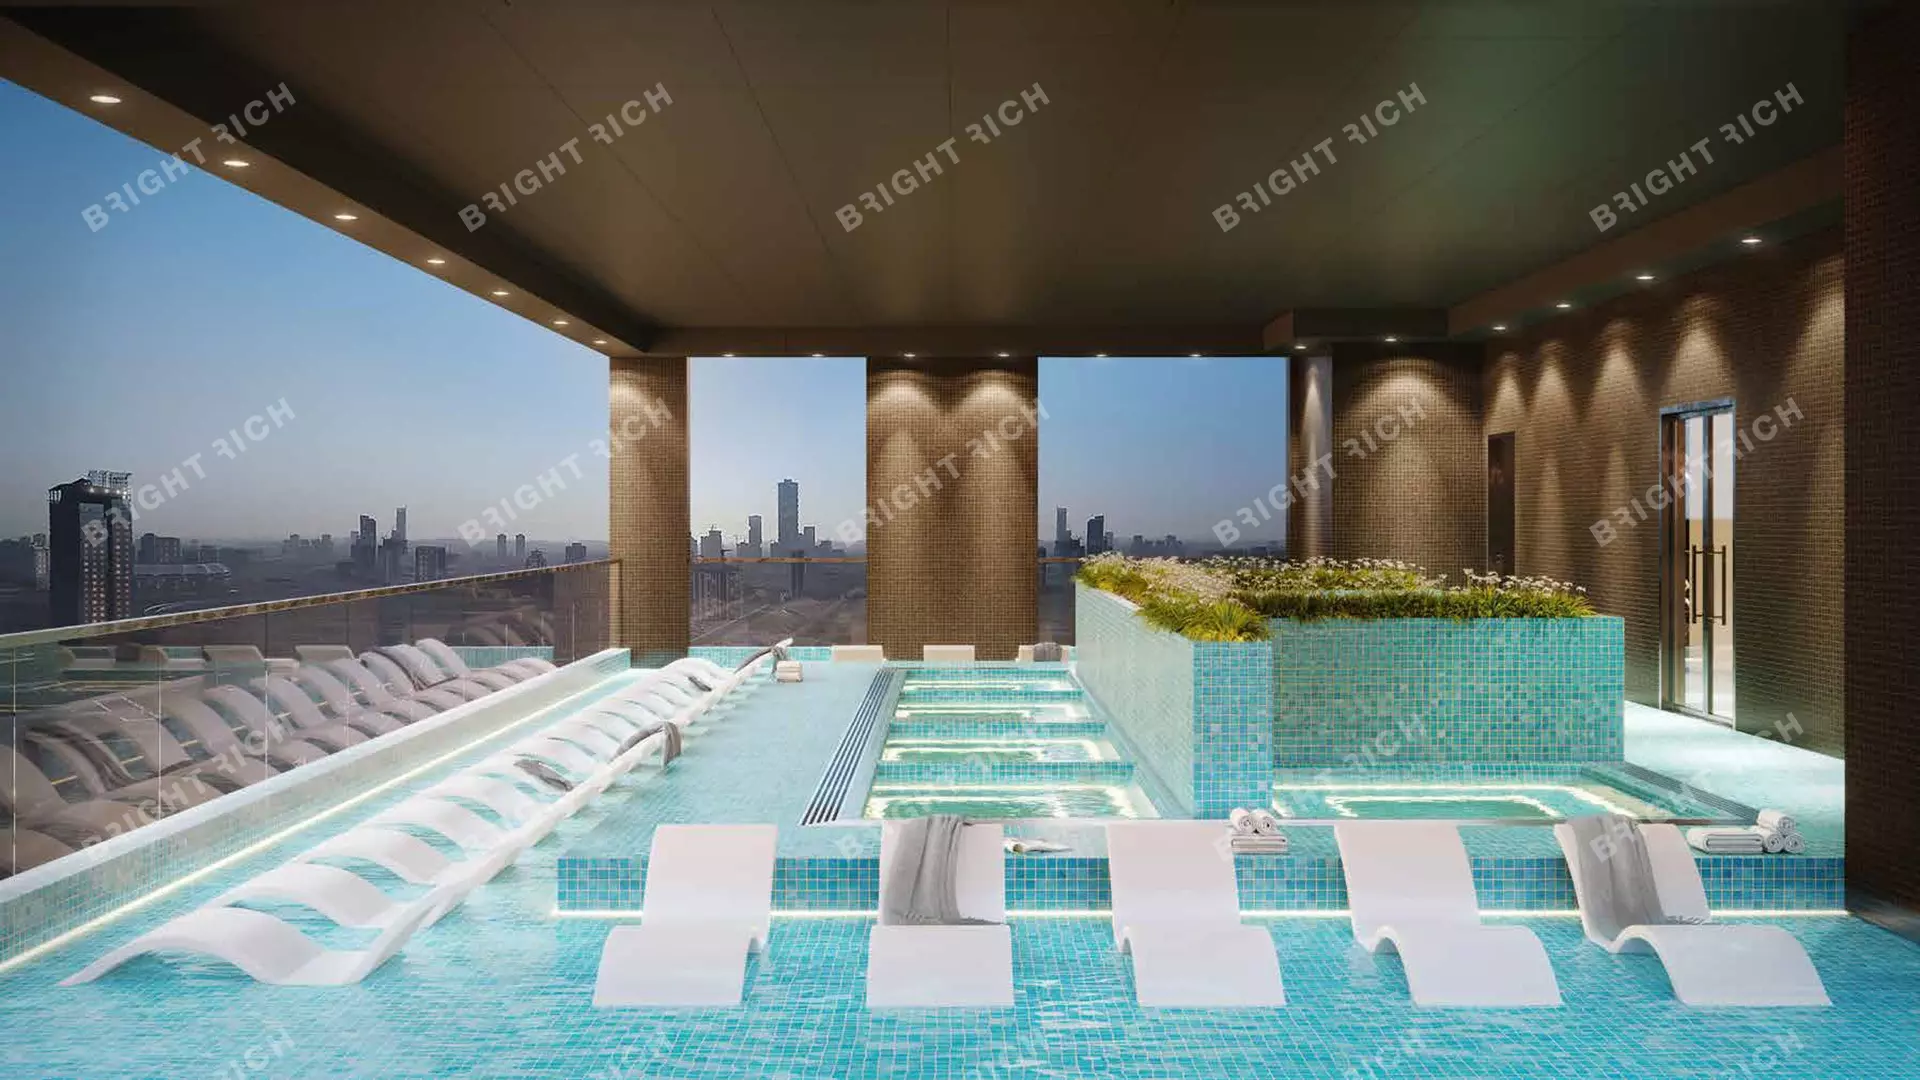 Skyz Residence, apart complex in Dubai - 10